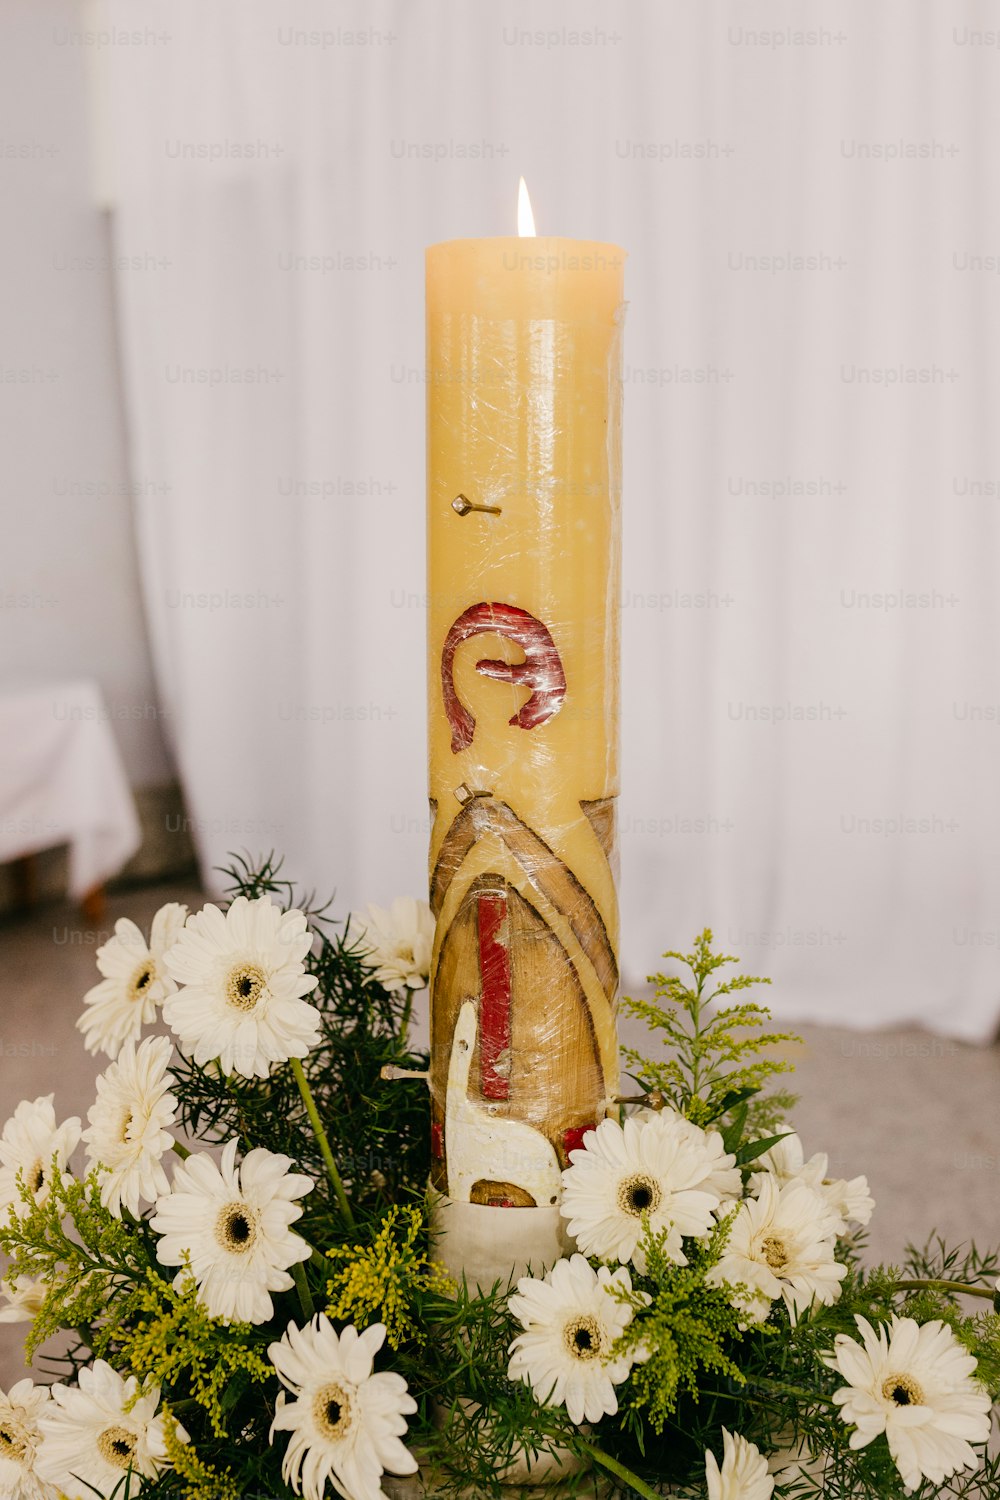 eine gelbe Kerze mit einem Bild einer Frau darauf